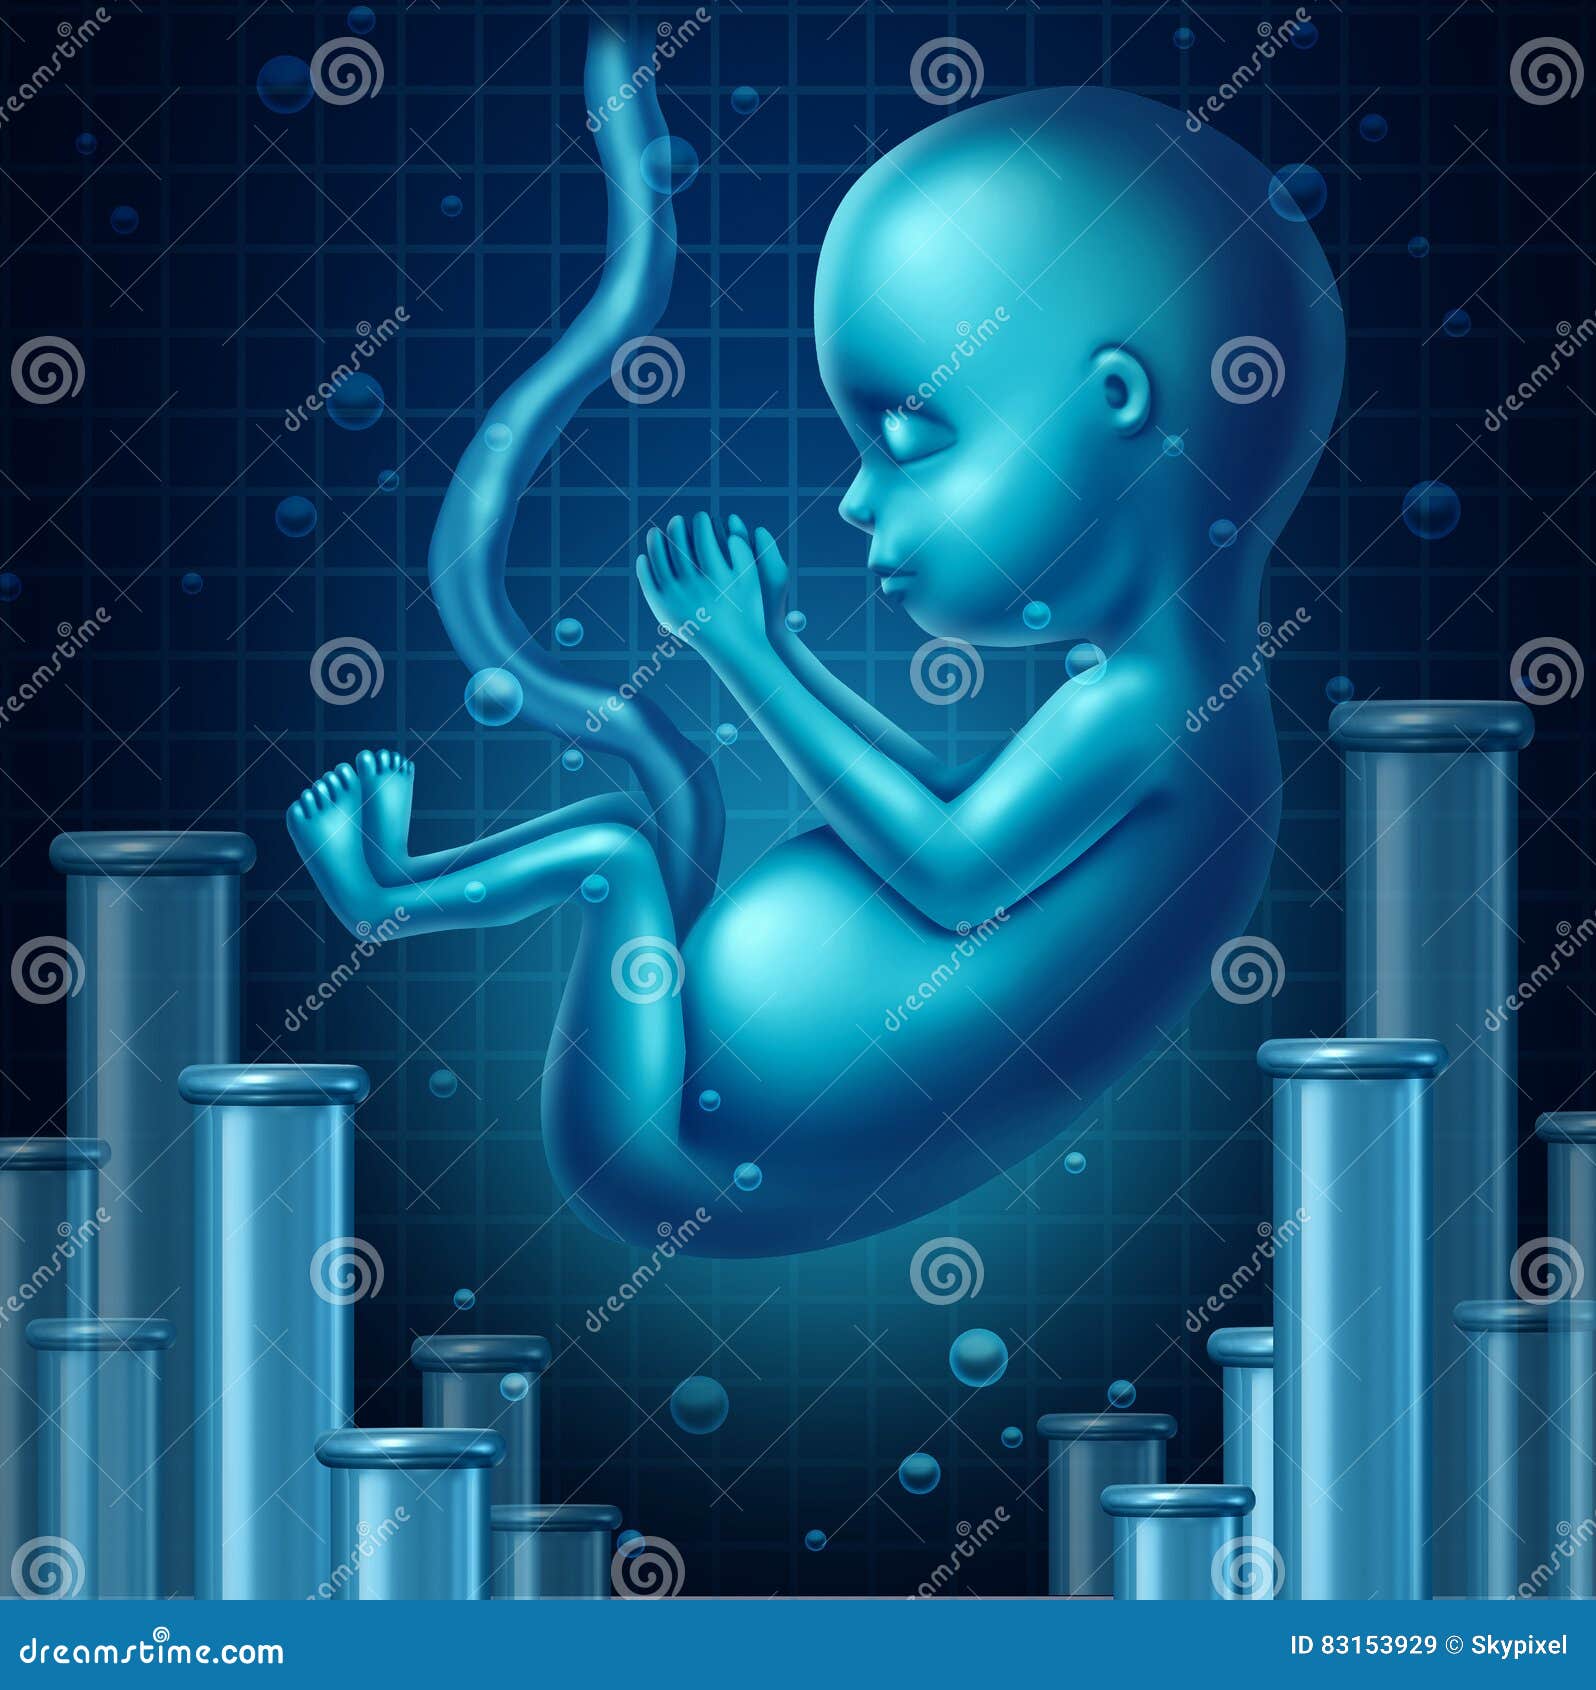 fertility science concept